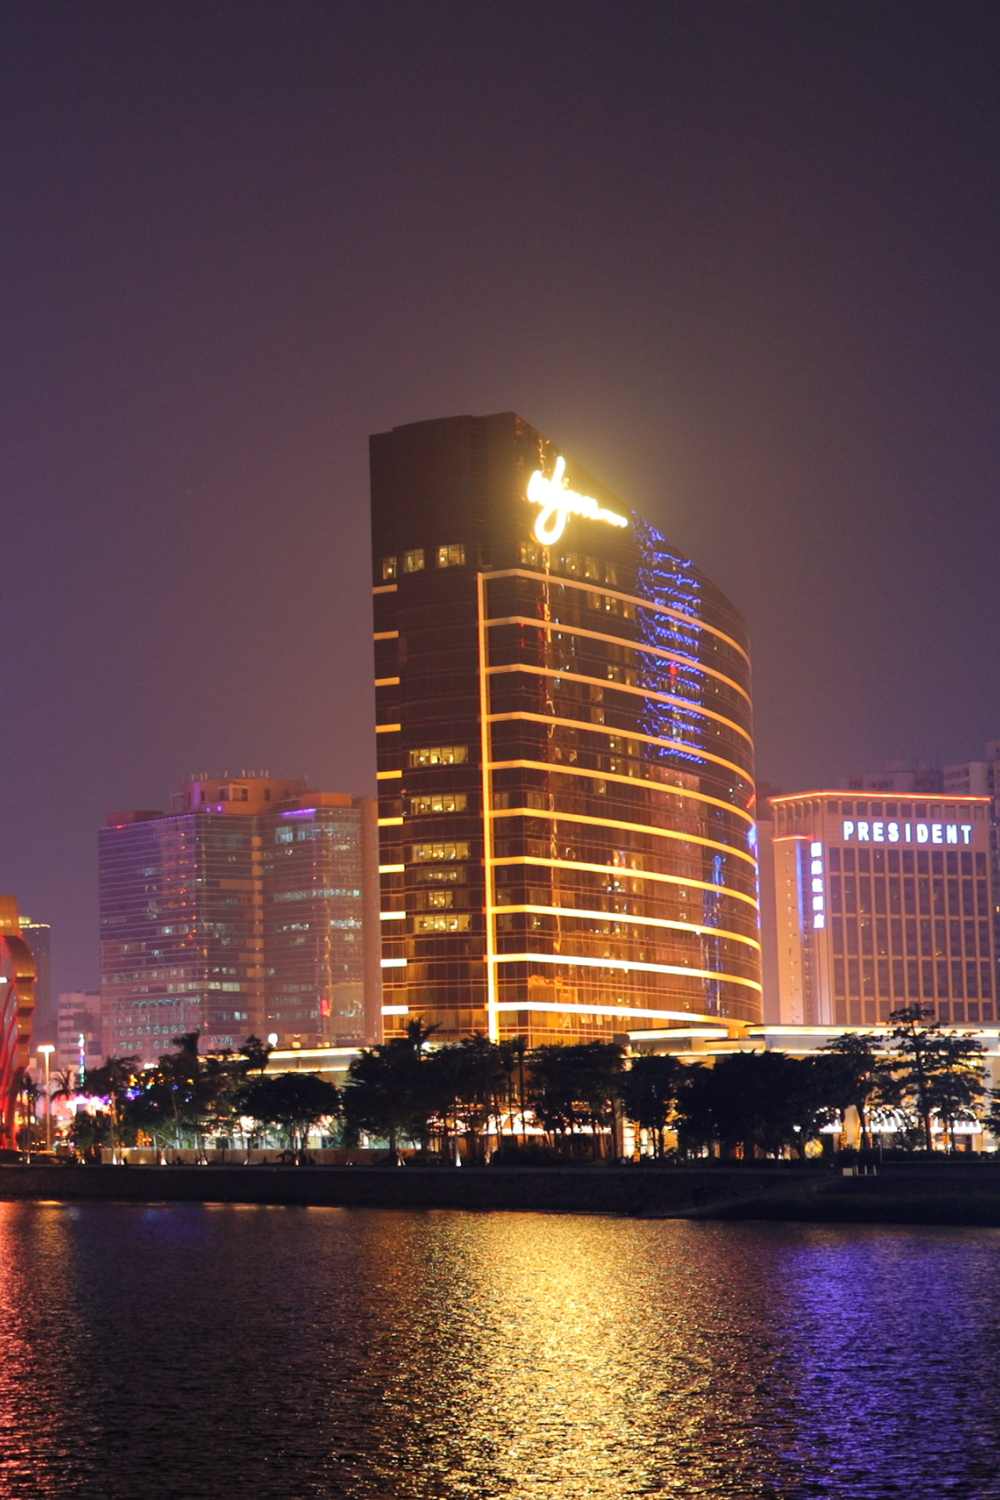 Wynn Macau, Macau, China, luxury casinos